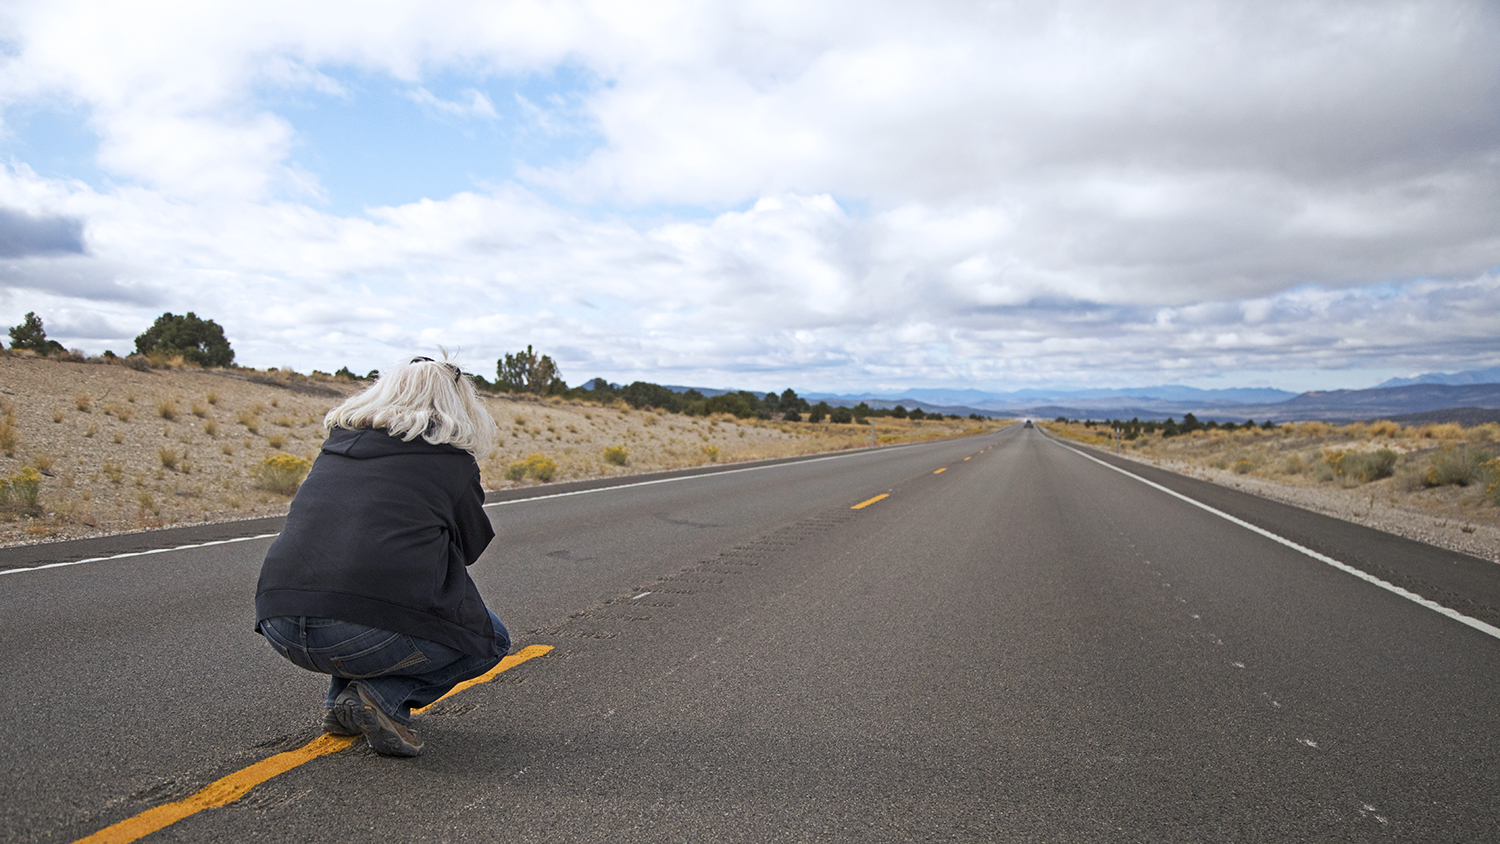 Ely-Road-Trip-Shots-Nevada-USA-TRUE-amerika-america-amerika-rundreisen-usa-kanada-reiseveranstalter-individuelle-usa-reisen-abenteuer-stars-hollywood-movie-blockbuster-golden-gate-brigde-freiheitsstatue